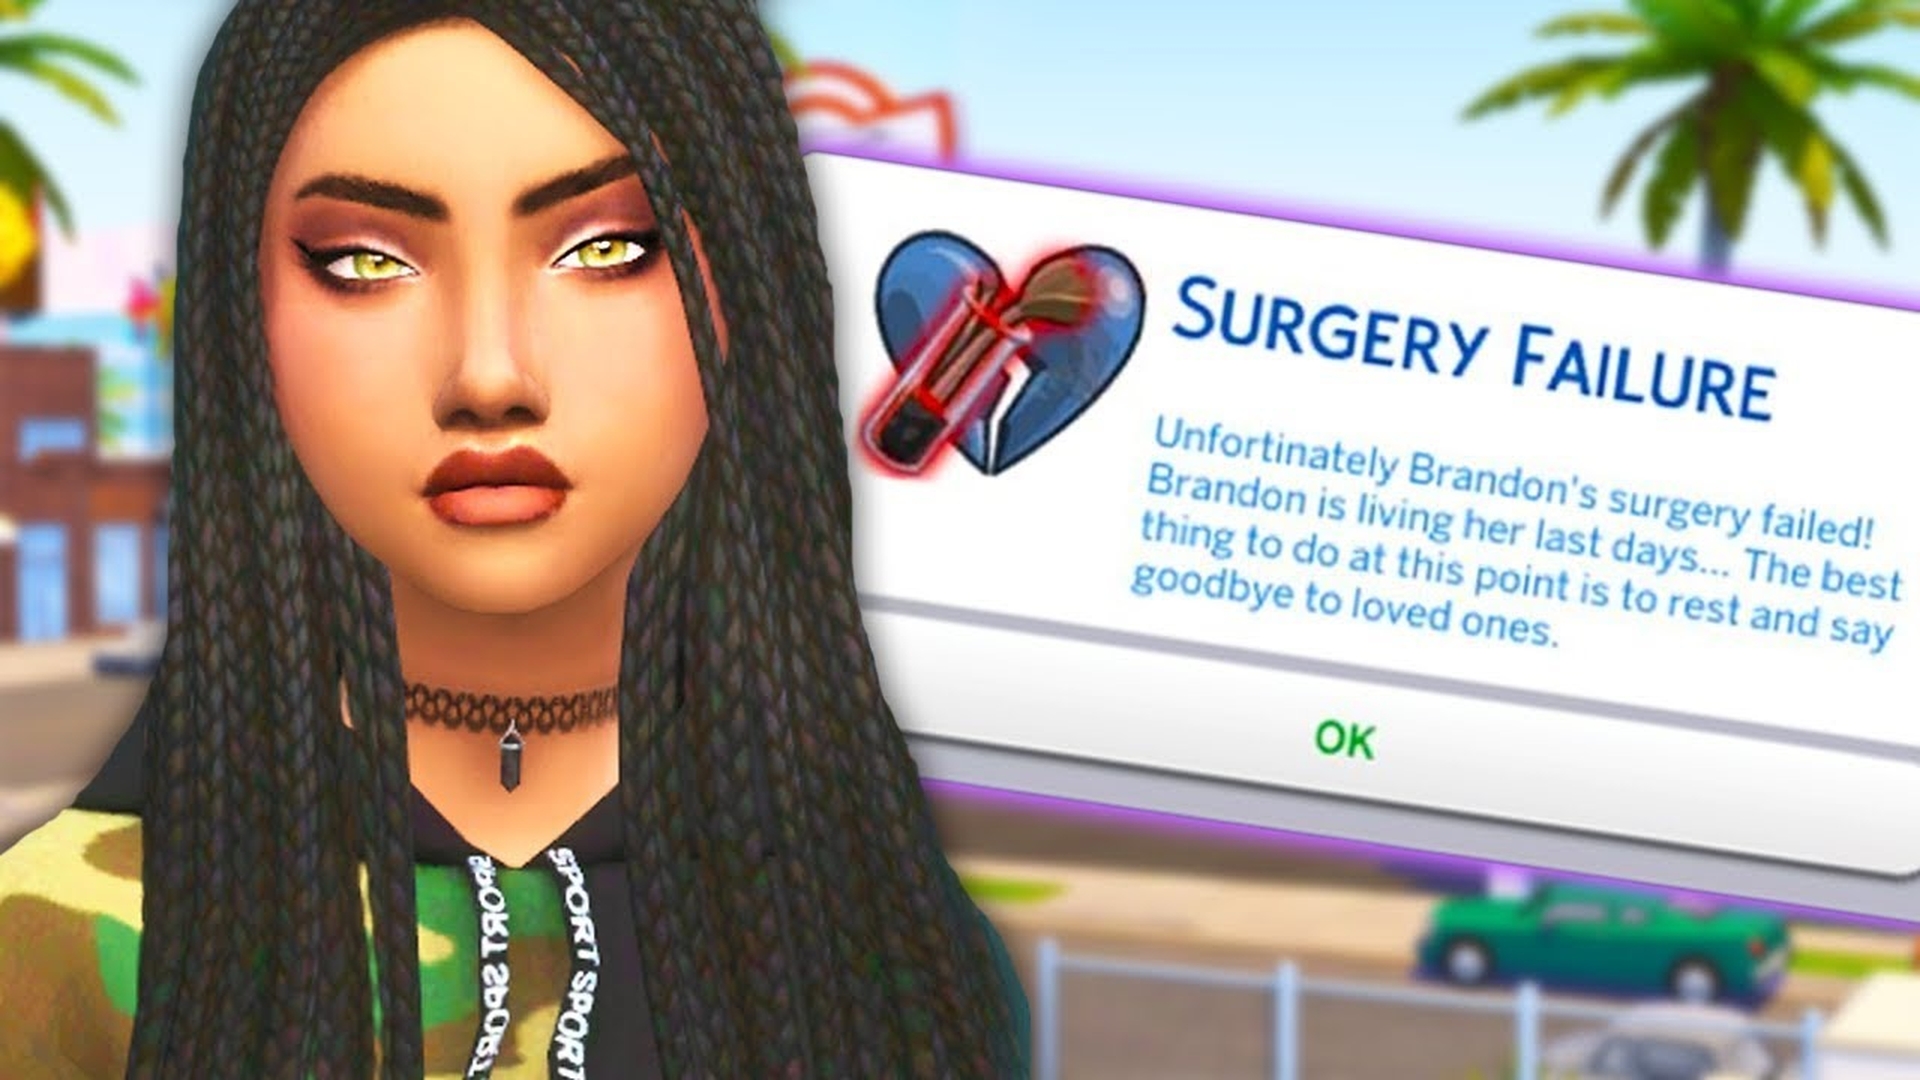 Sims 4 Life Tragedies modu nasıl etkinleştirilir?